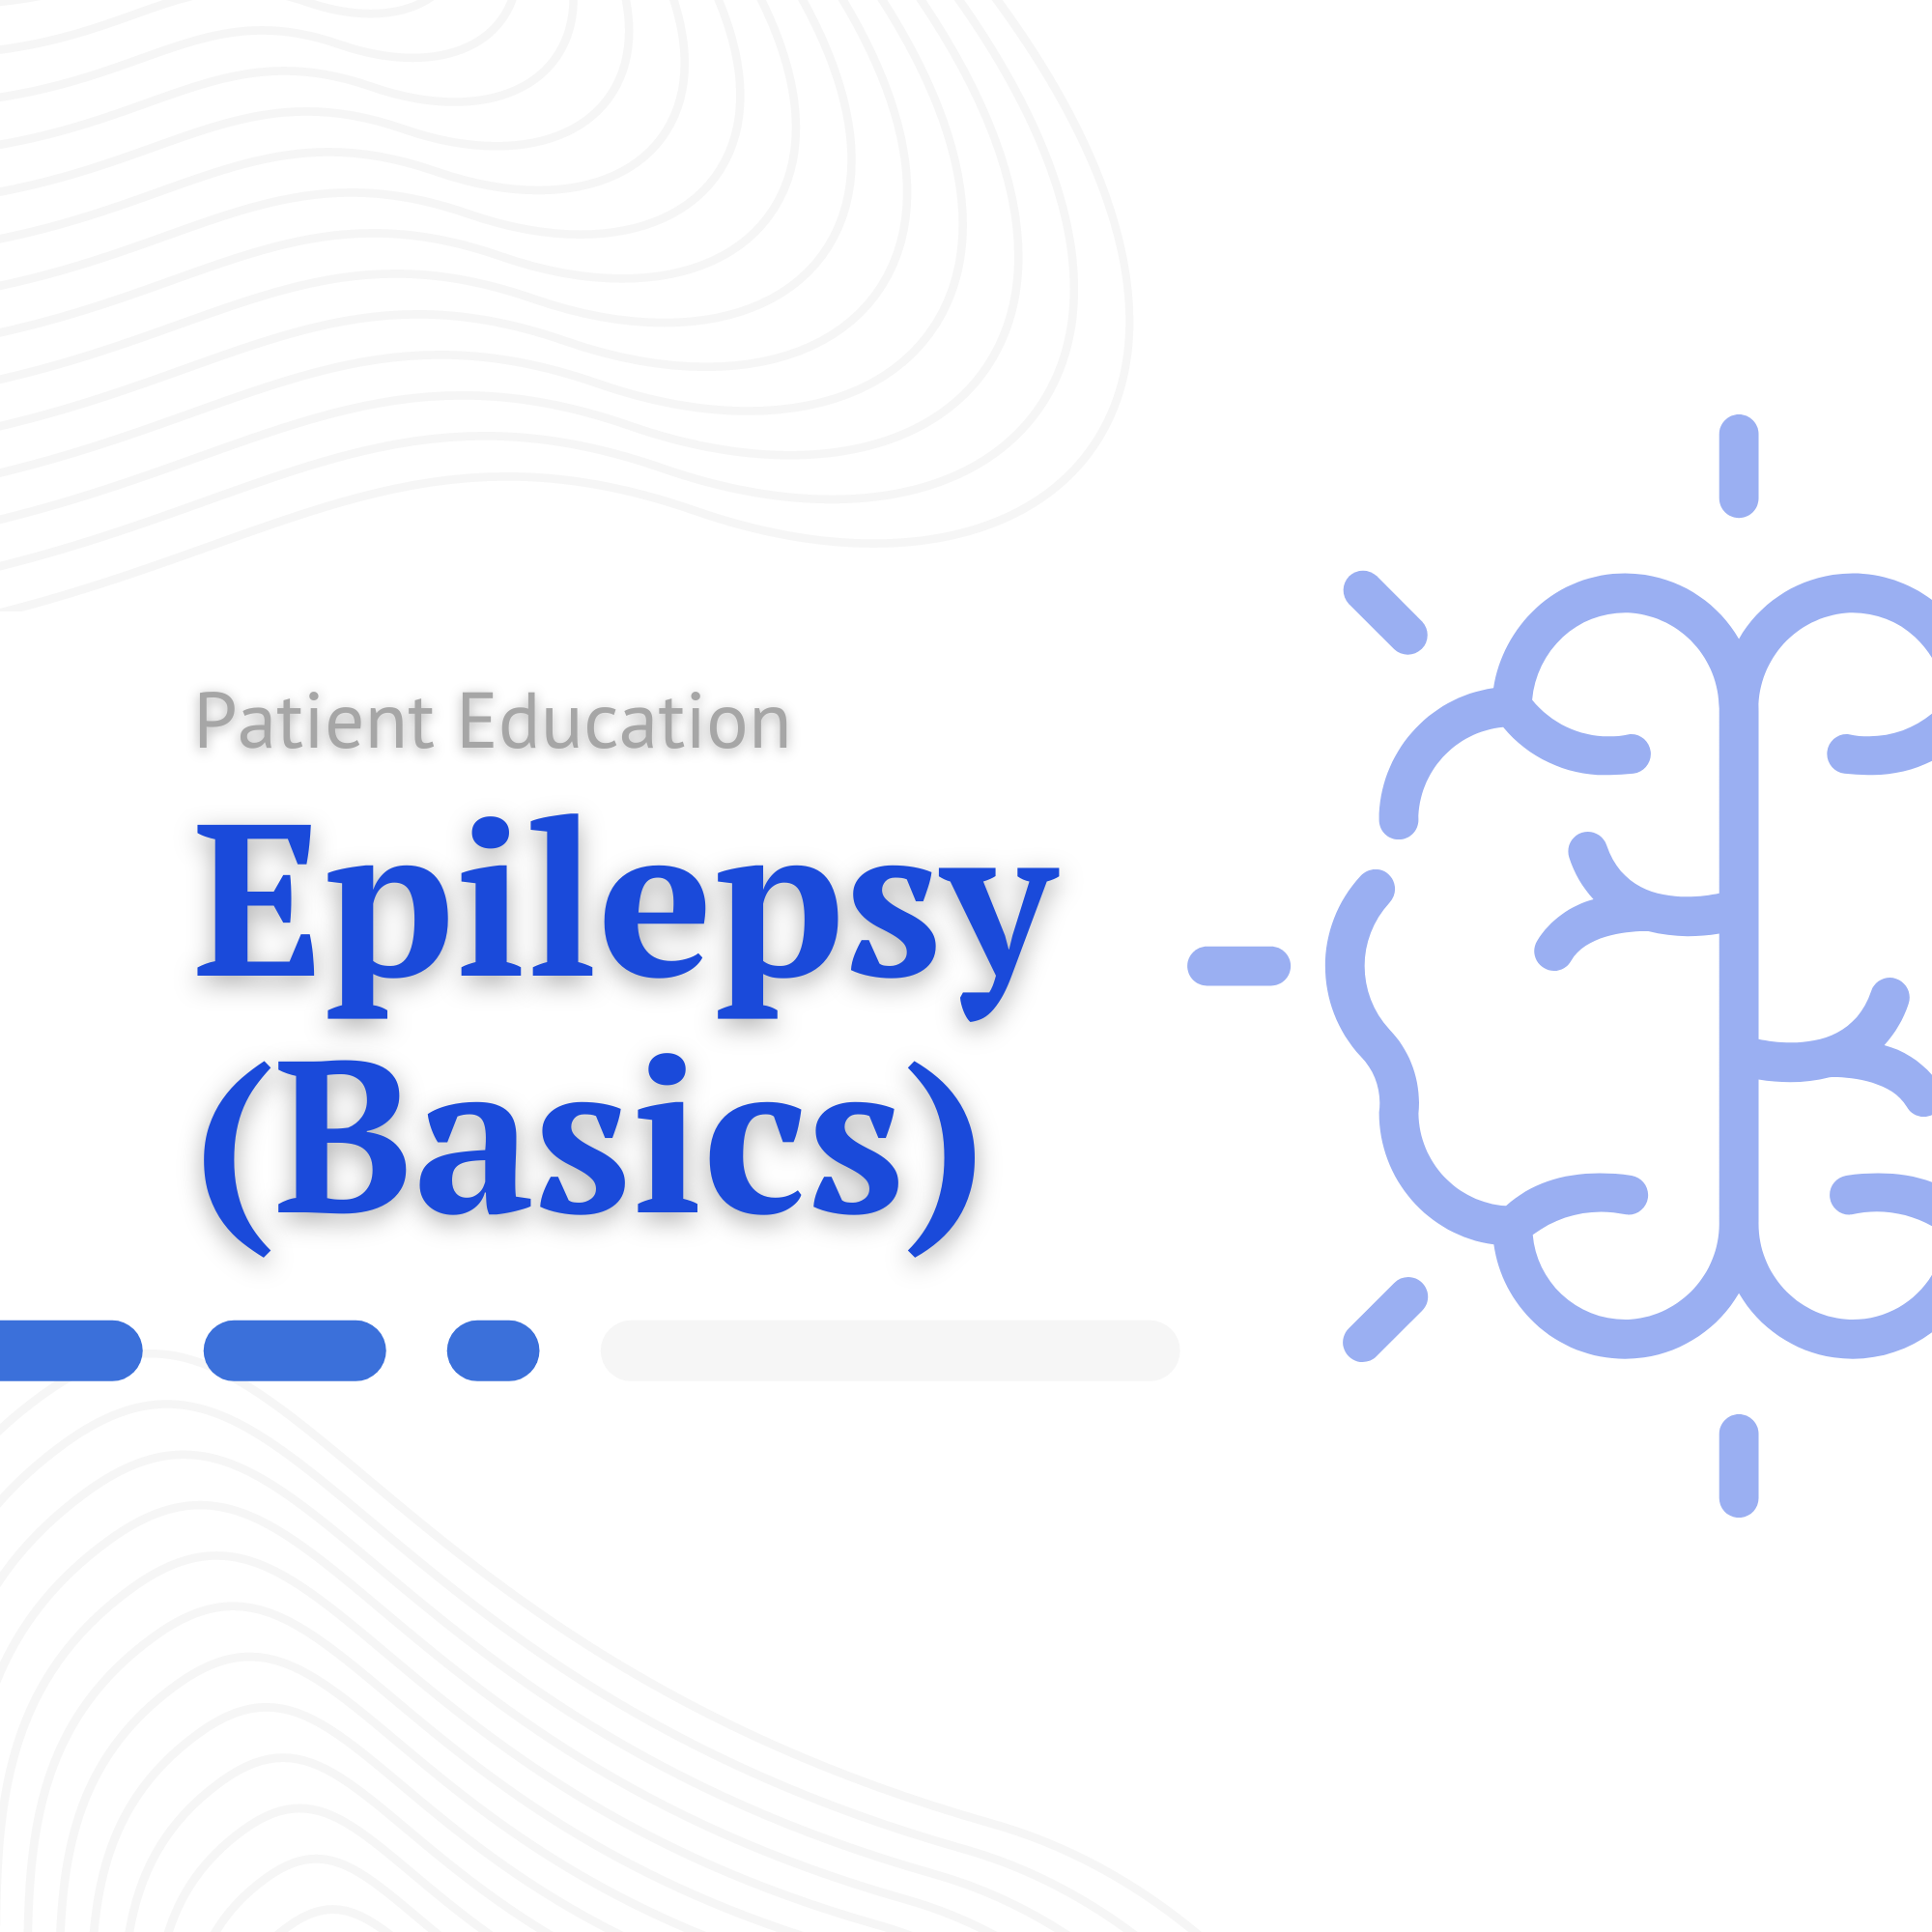 Epilepsy (Basics)